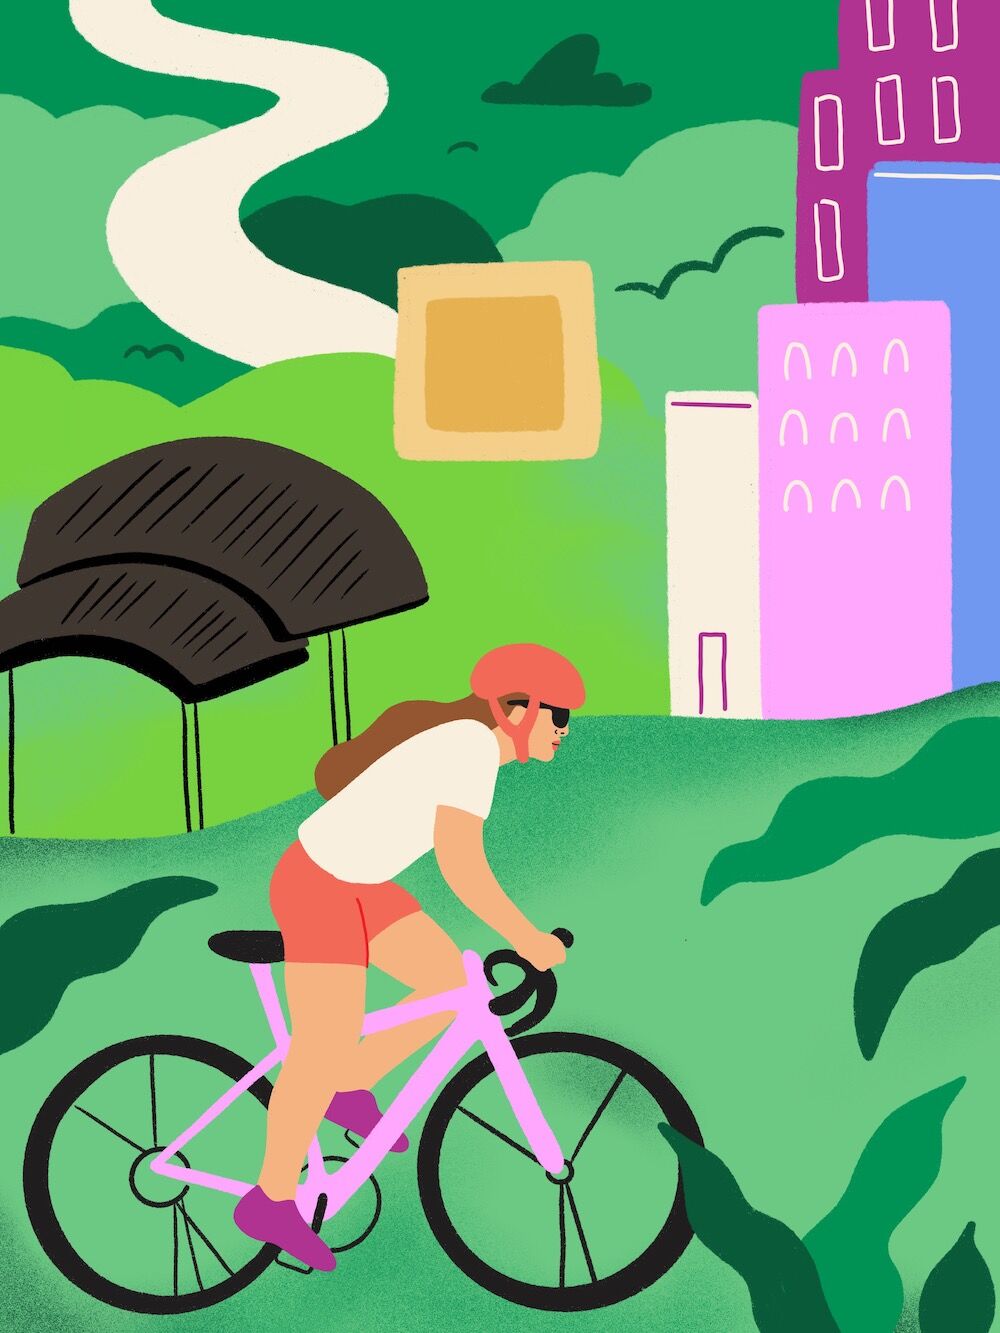 Mission Valley - illustration 1 - bike